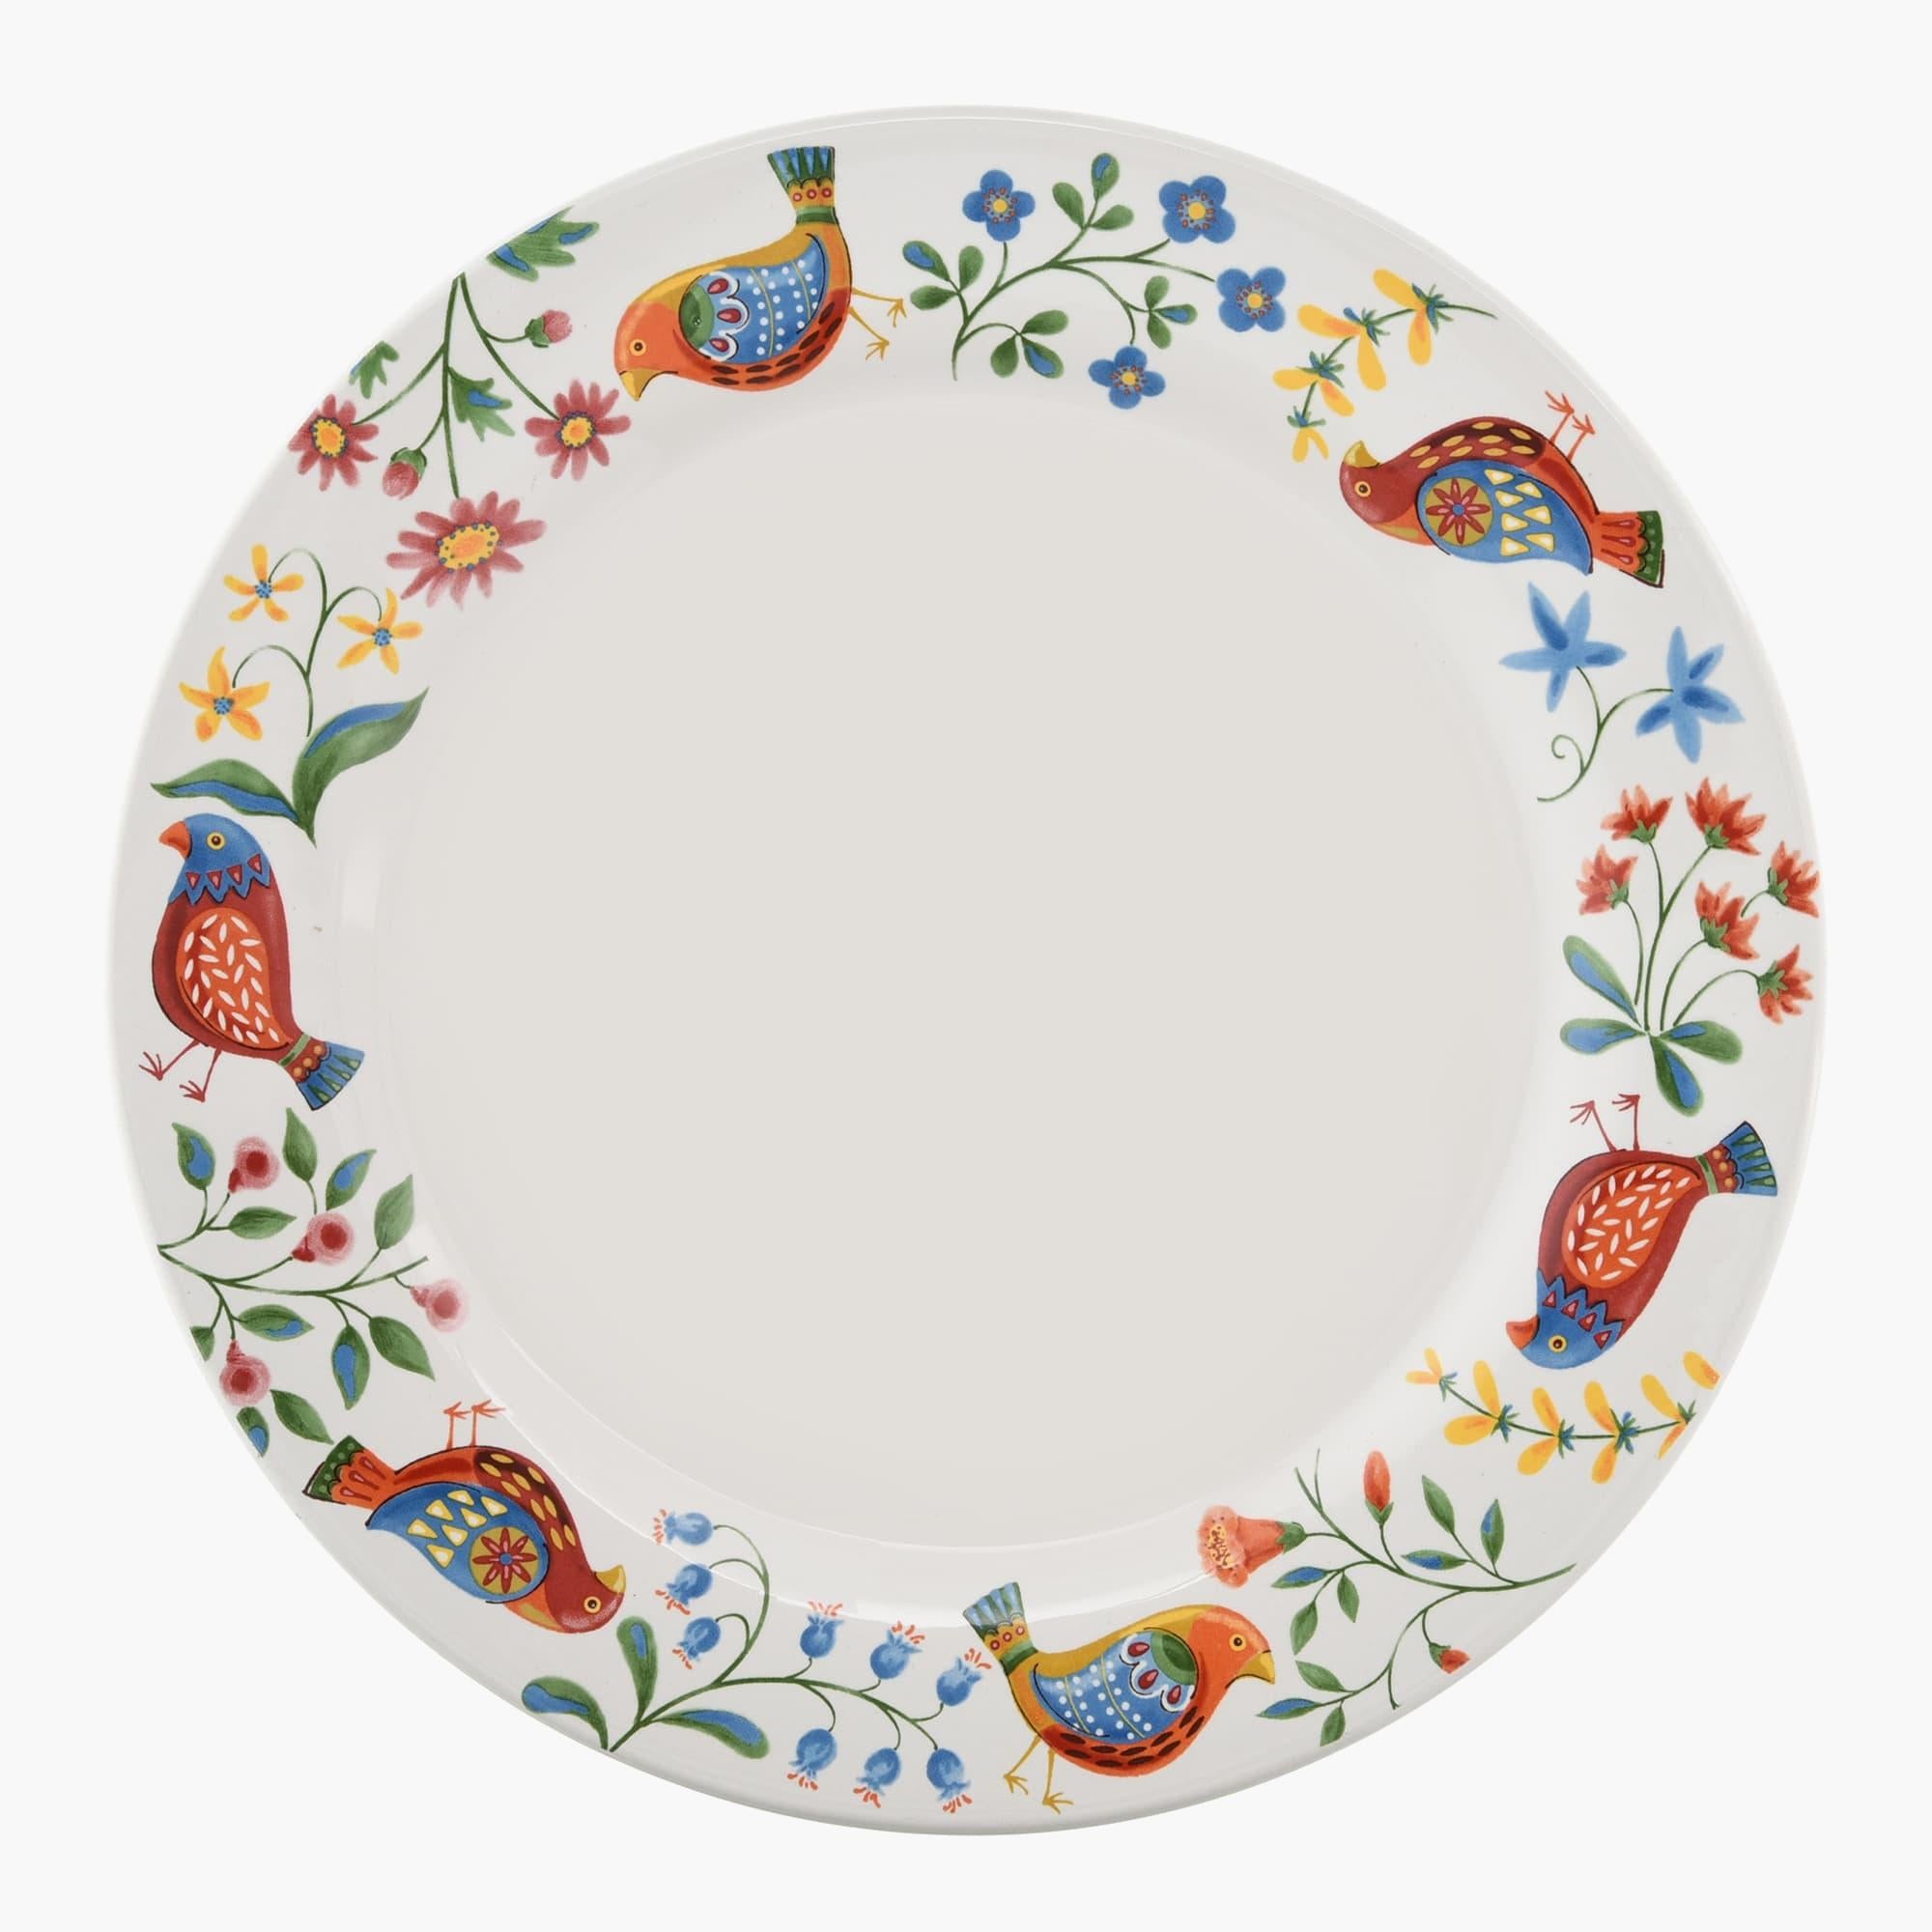 11-Inch Folk Art Inspired Ceramic Dinner Plate - Set of Four